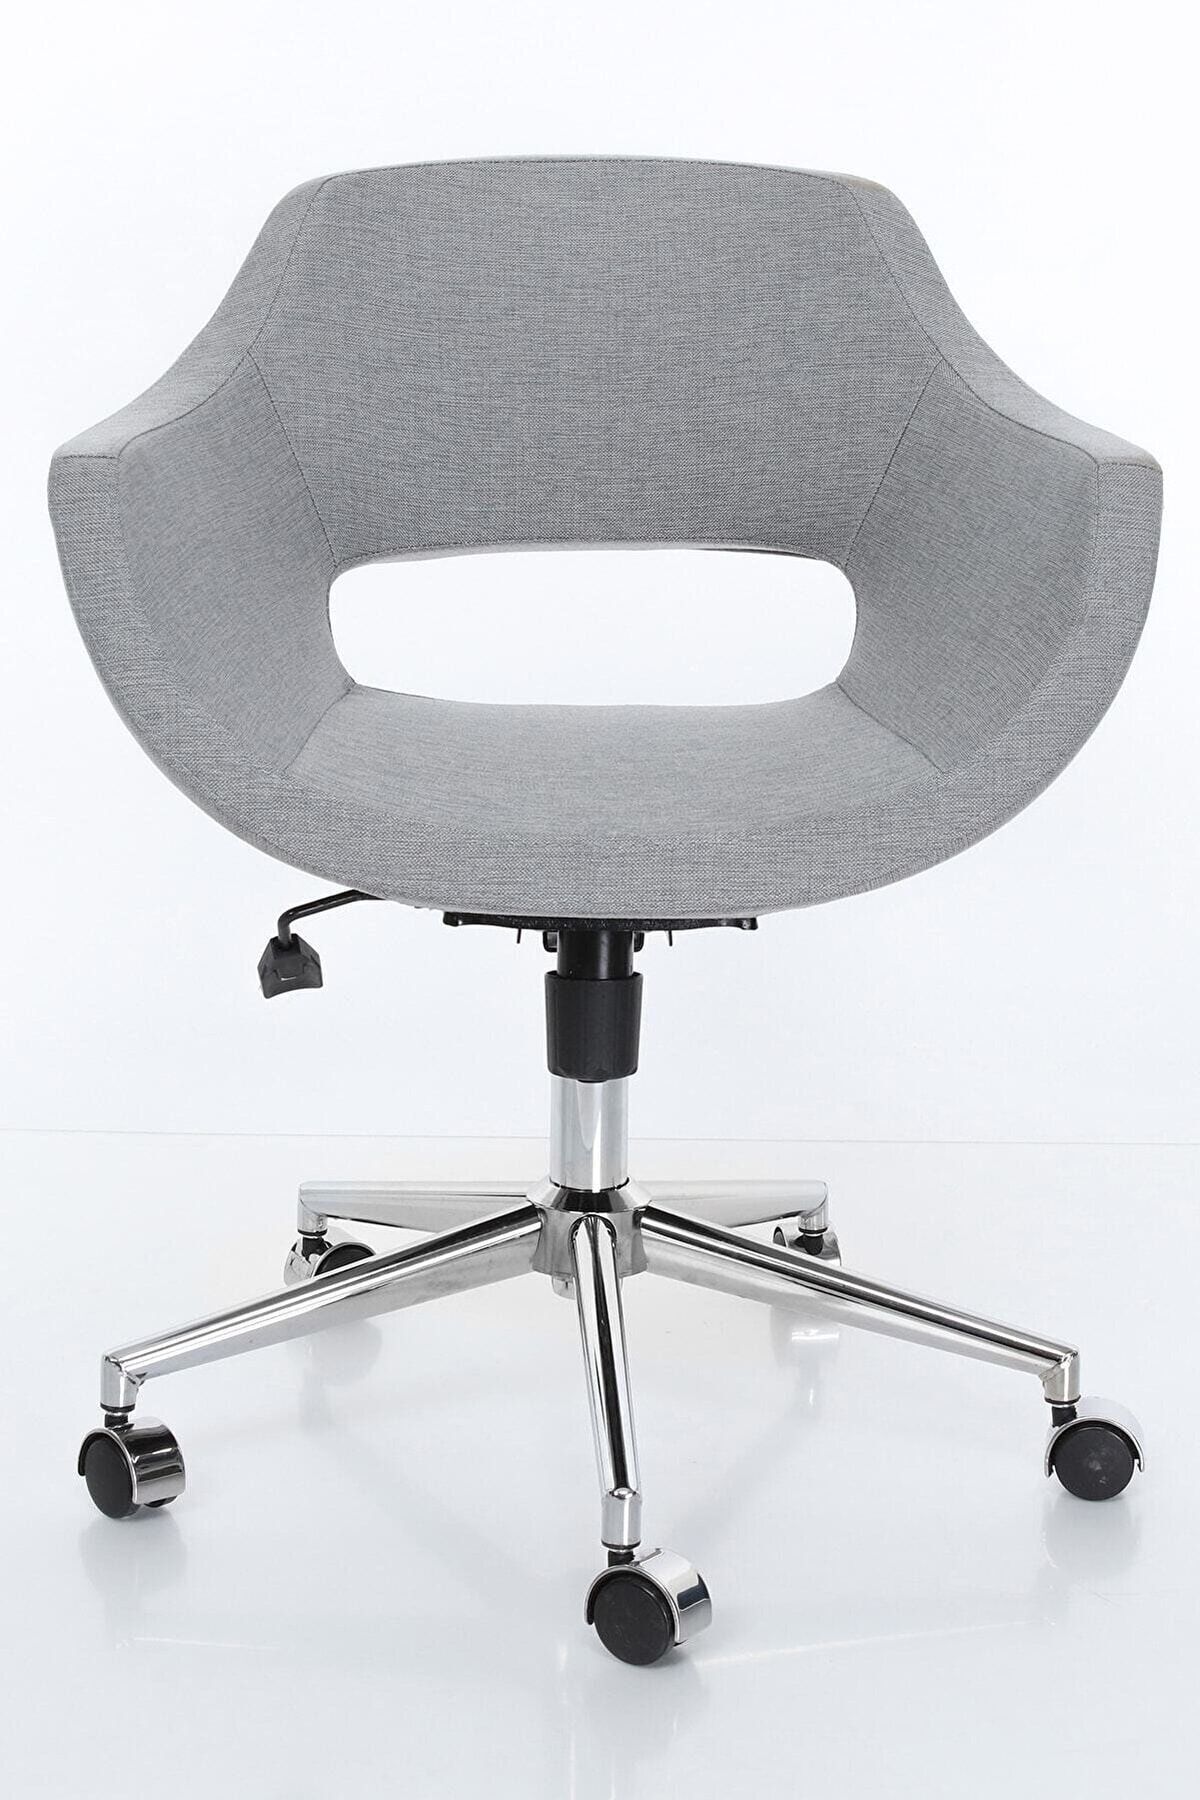 bluetick Ofis Ders Çalışma Çok Amaçlı Poliüretan Krom Ayaklı Ergonomik 360 Derece Sandalye Blu1717